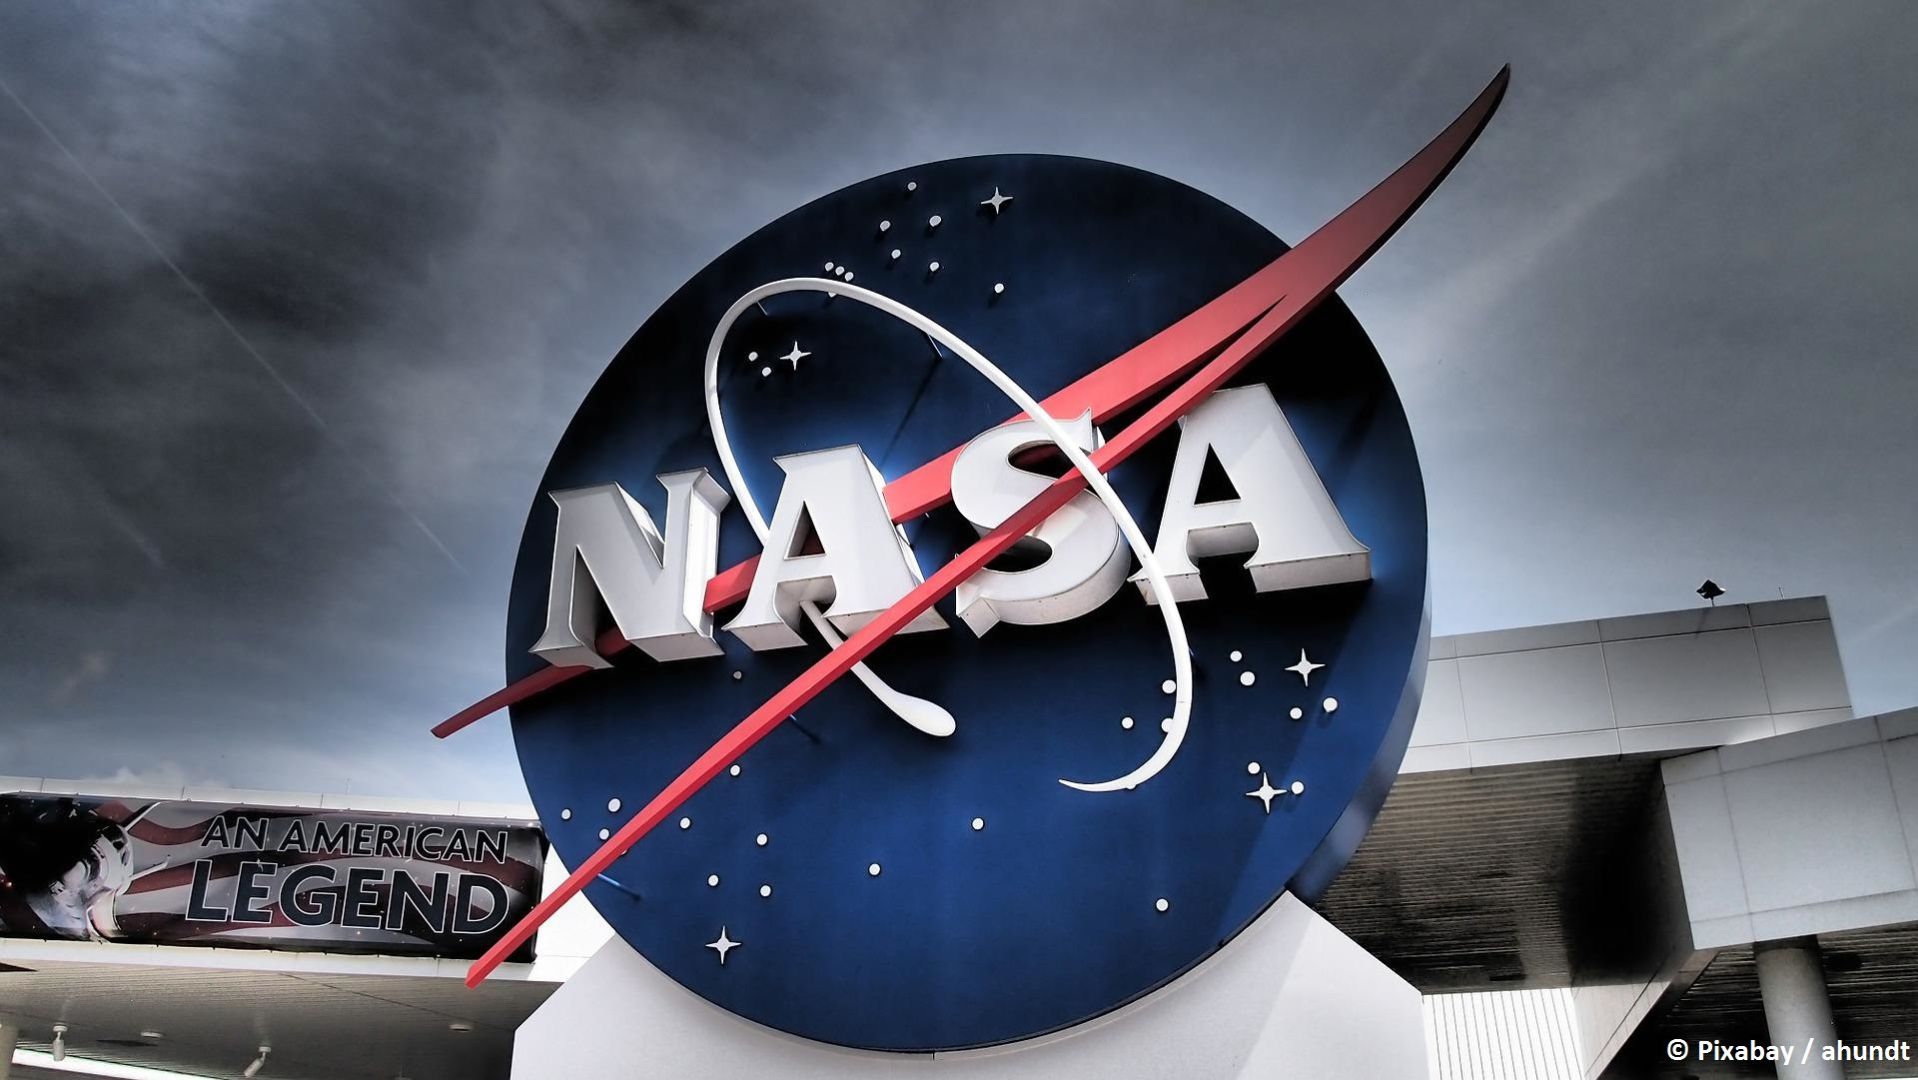 NASA-Experten verlassen Mars-Hubschrauber, nachdem dieser kaputt gegangen ist